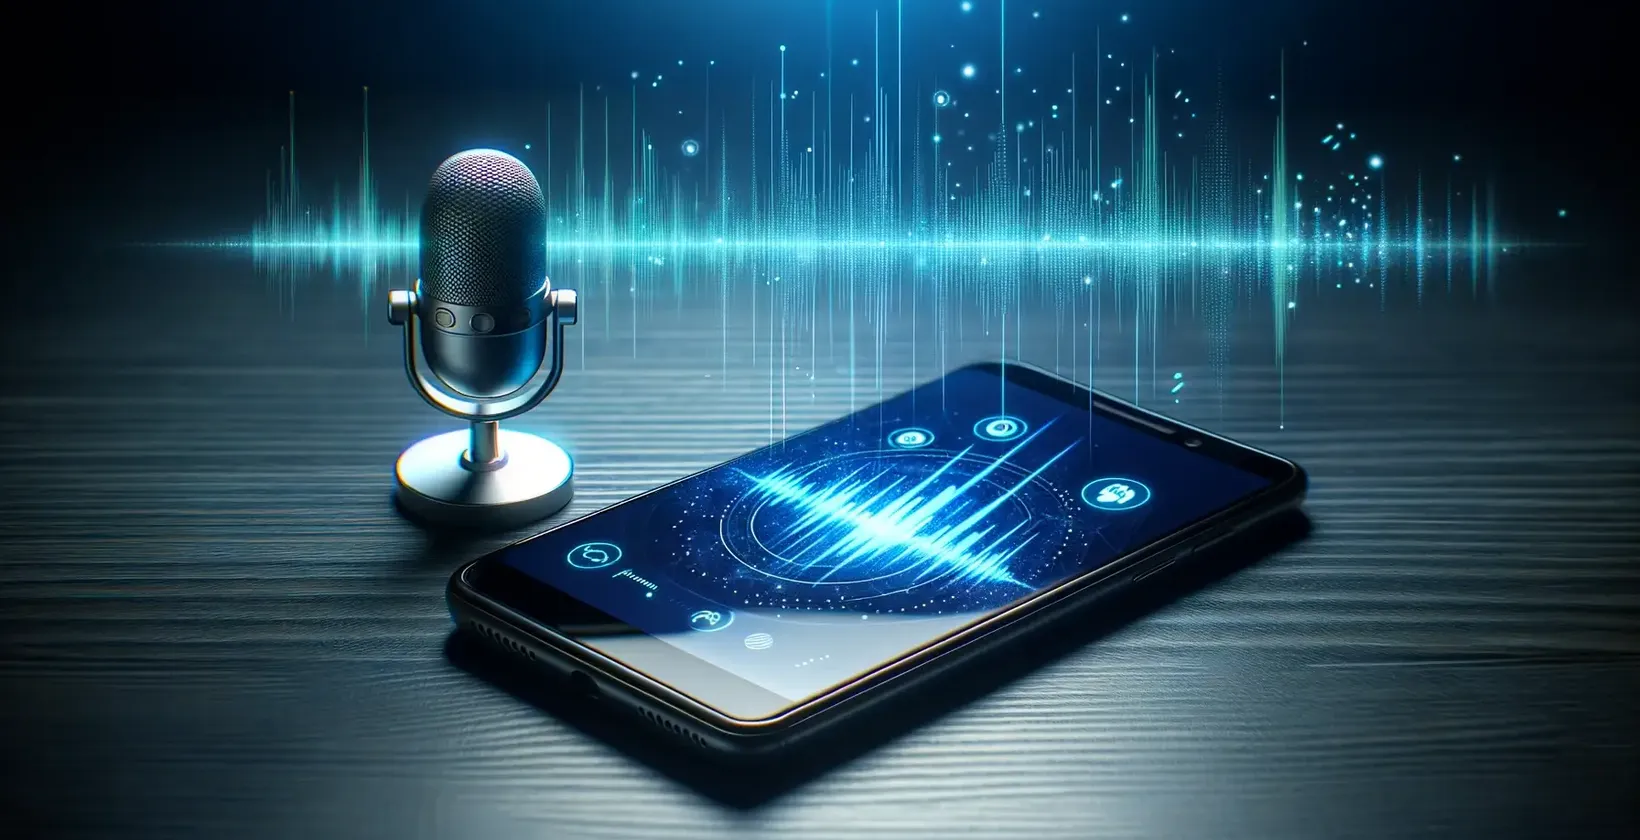 Moderný mikrofón stojí vedľa smartfónu a zobrazuje živú grafiku zvukových vĺn.